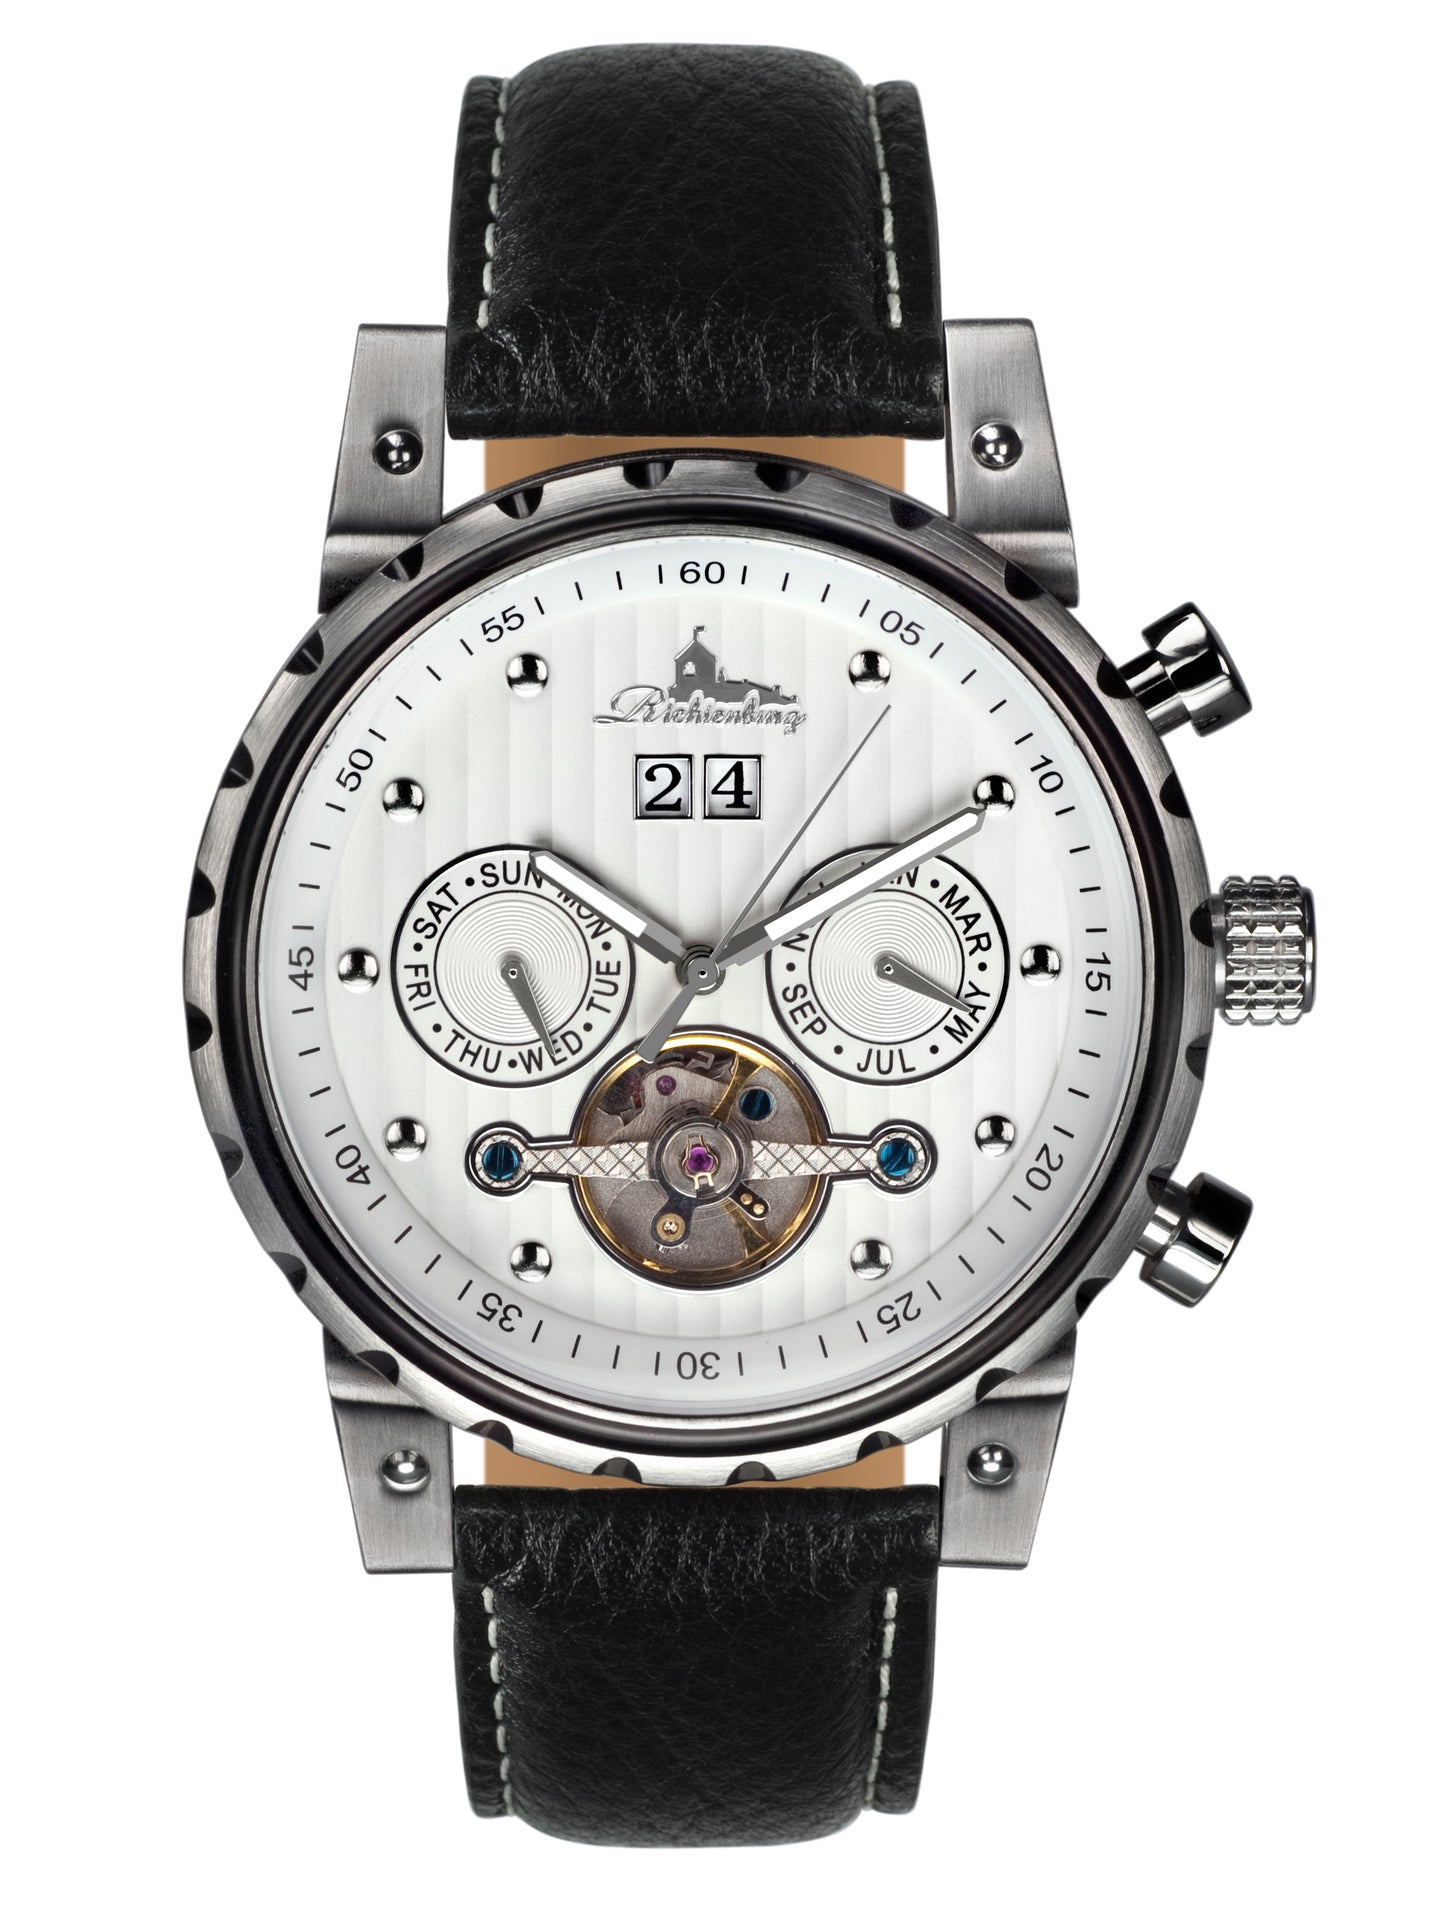 Automatic watches — Newport — Richtenburg — white